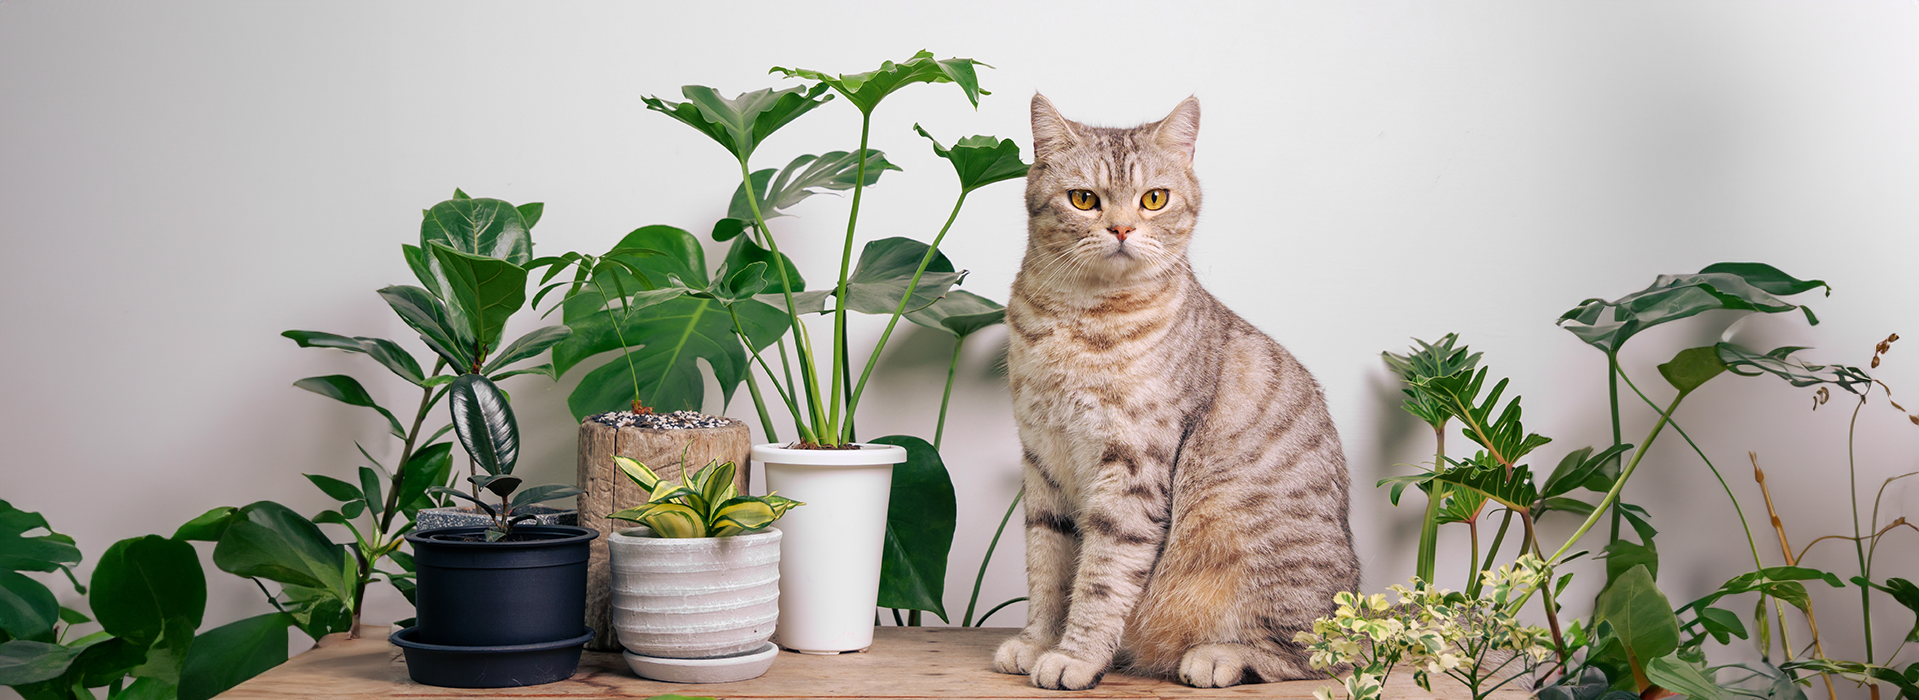 Verde e Seguro: Plantas Seguras para seus Gatos